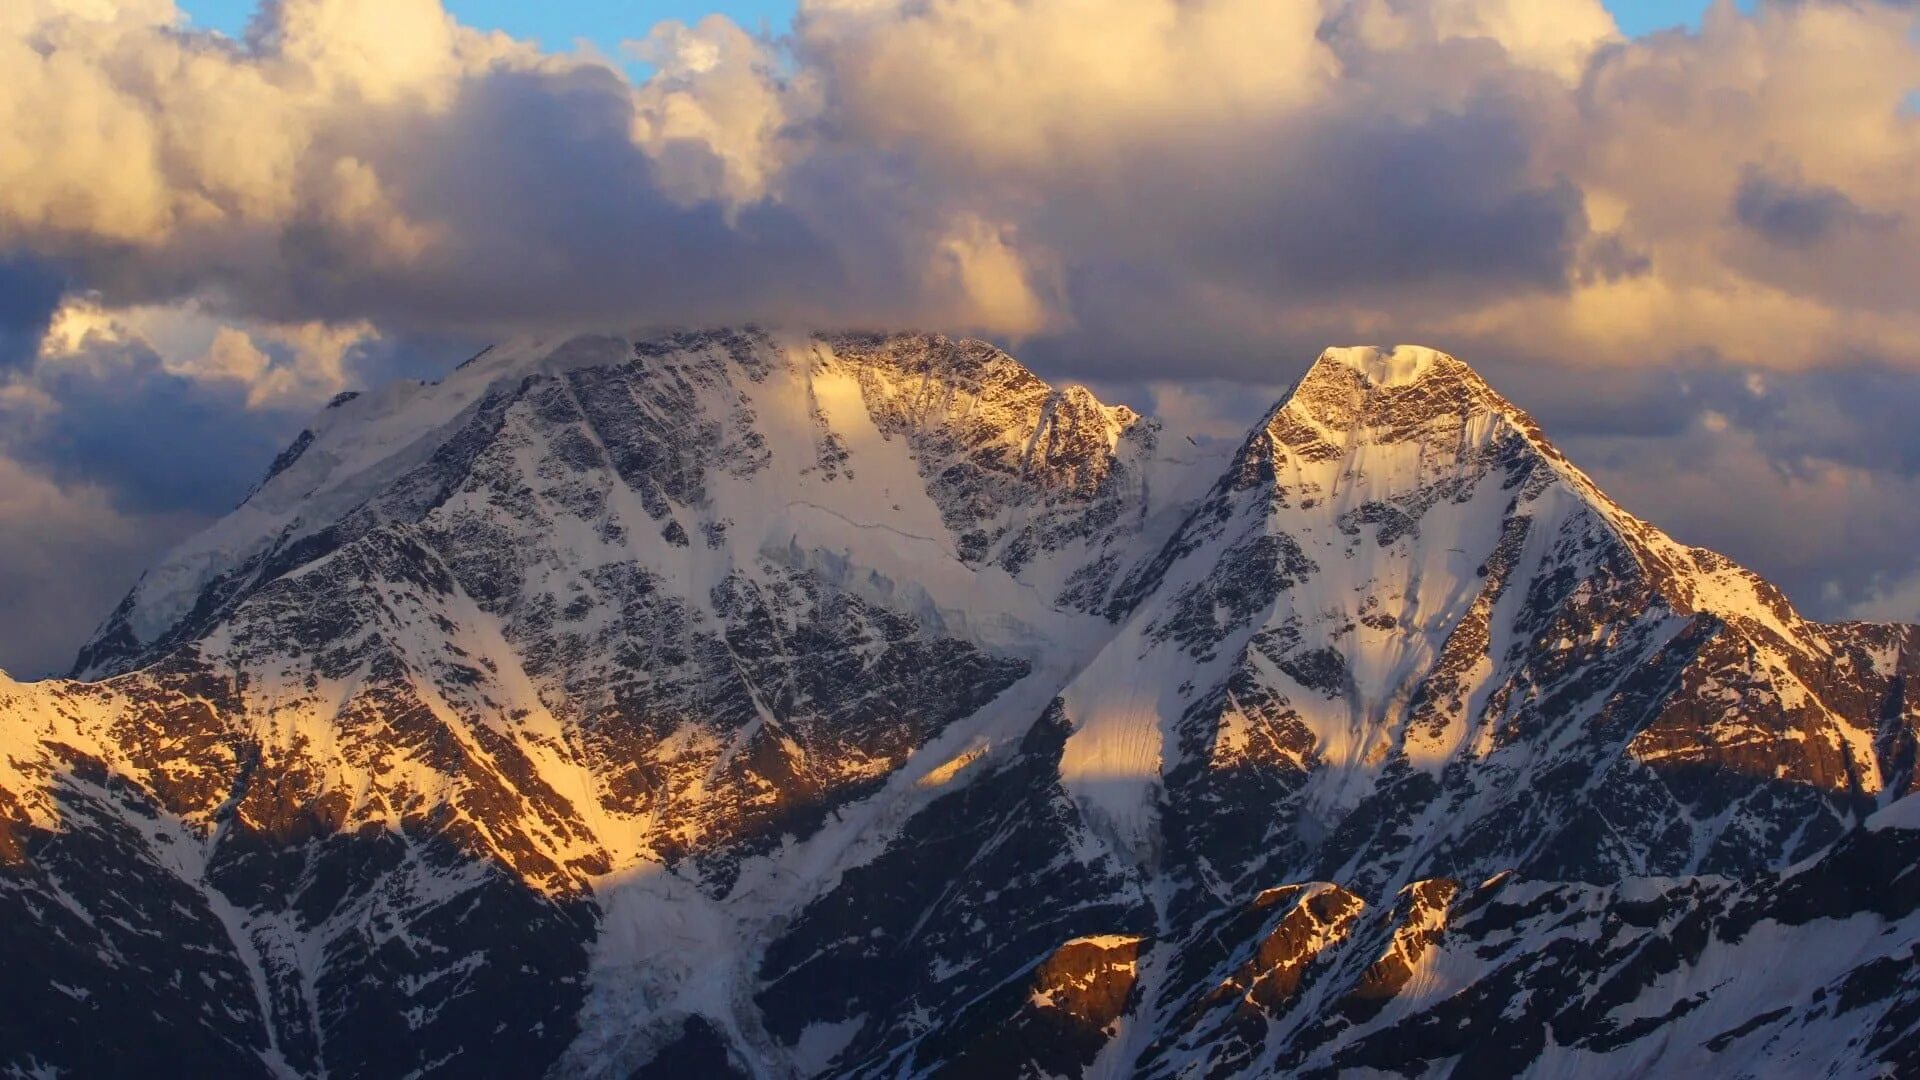 Самая высокая гора в рос. Кавказские горы Эльбрус. Горы Эльбрус кавказский хребет. Самая высокая гора Кавказа Эльбрус. Гора Эльбрус (5642 м) — высочайшая вершина России.